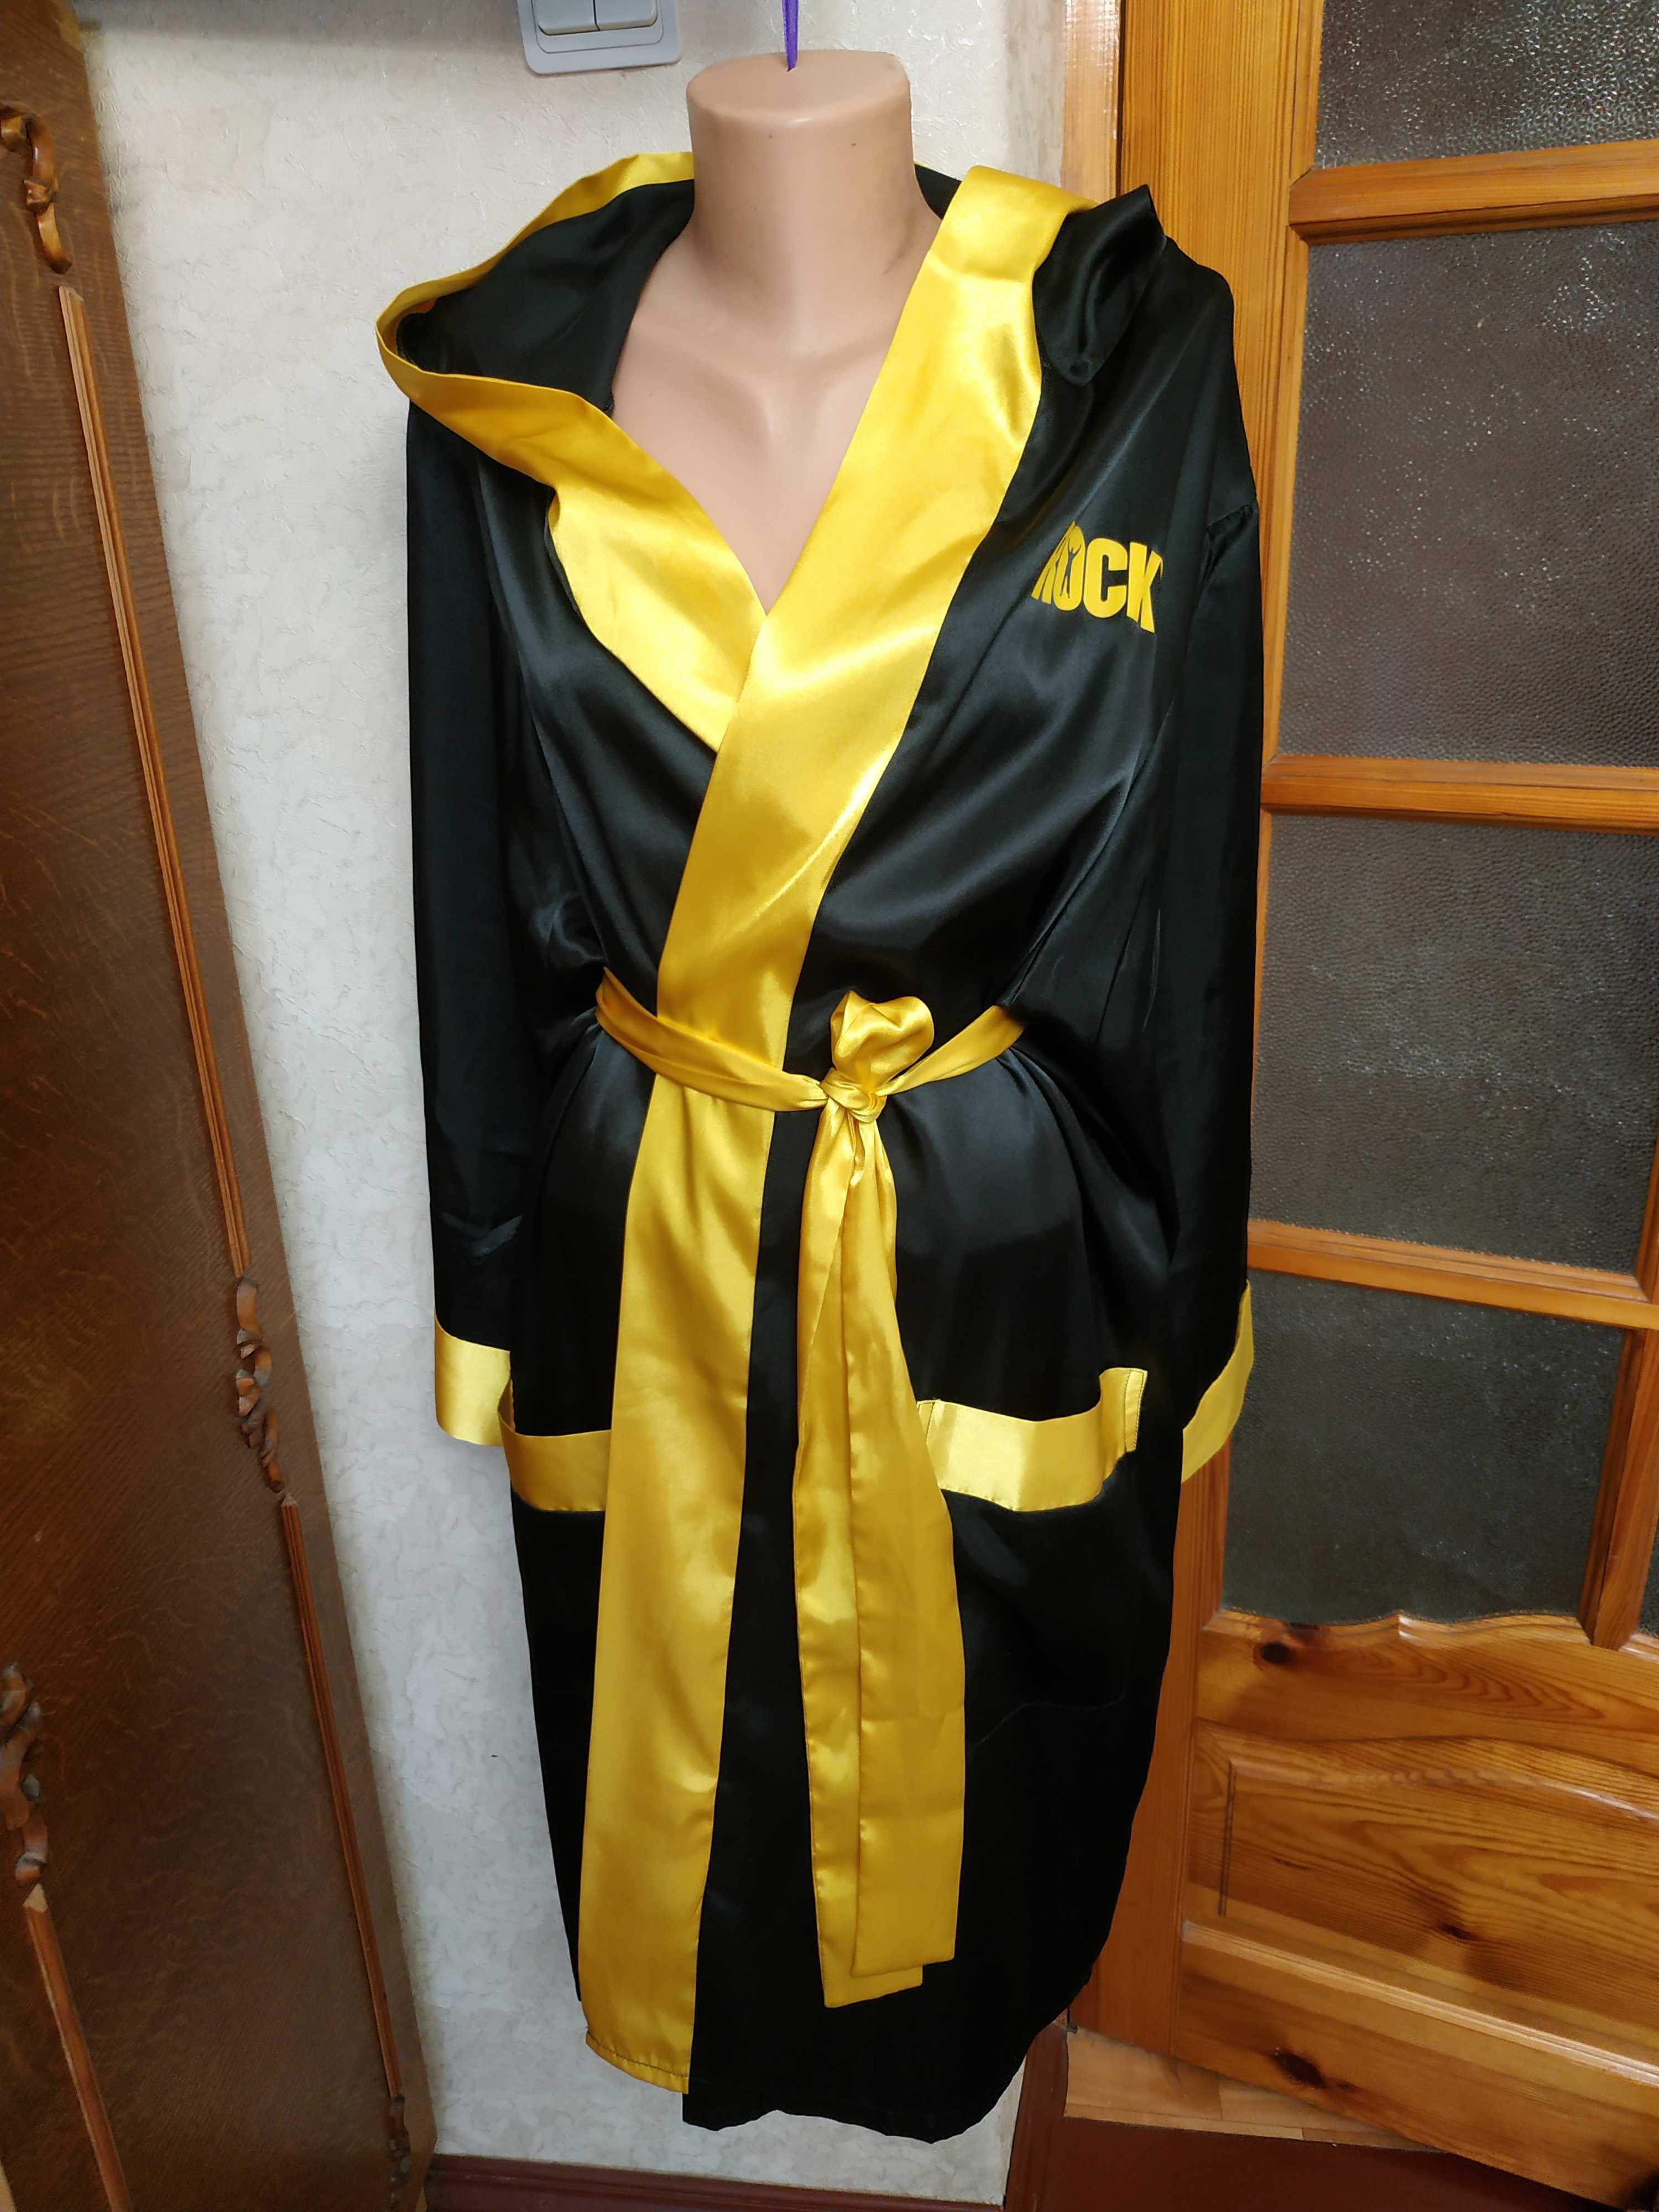 Чоловічий шовковий боксерський халат з капюшоном Рокі  Чорно-жовтий